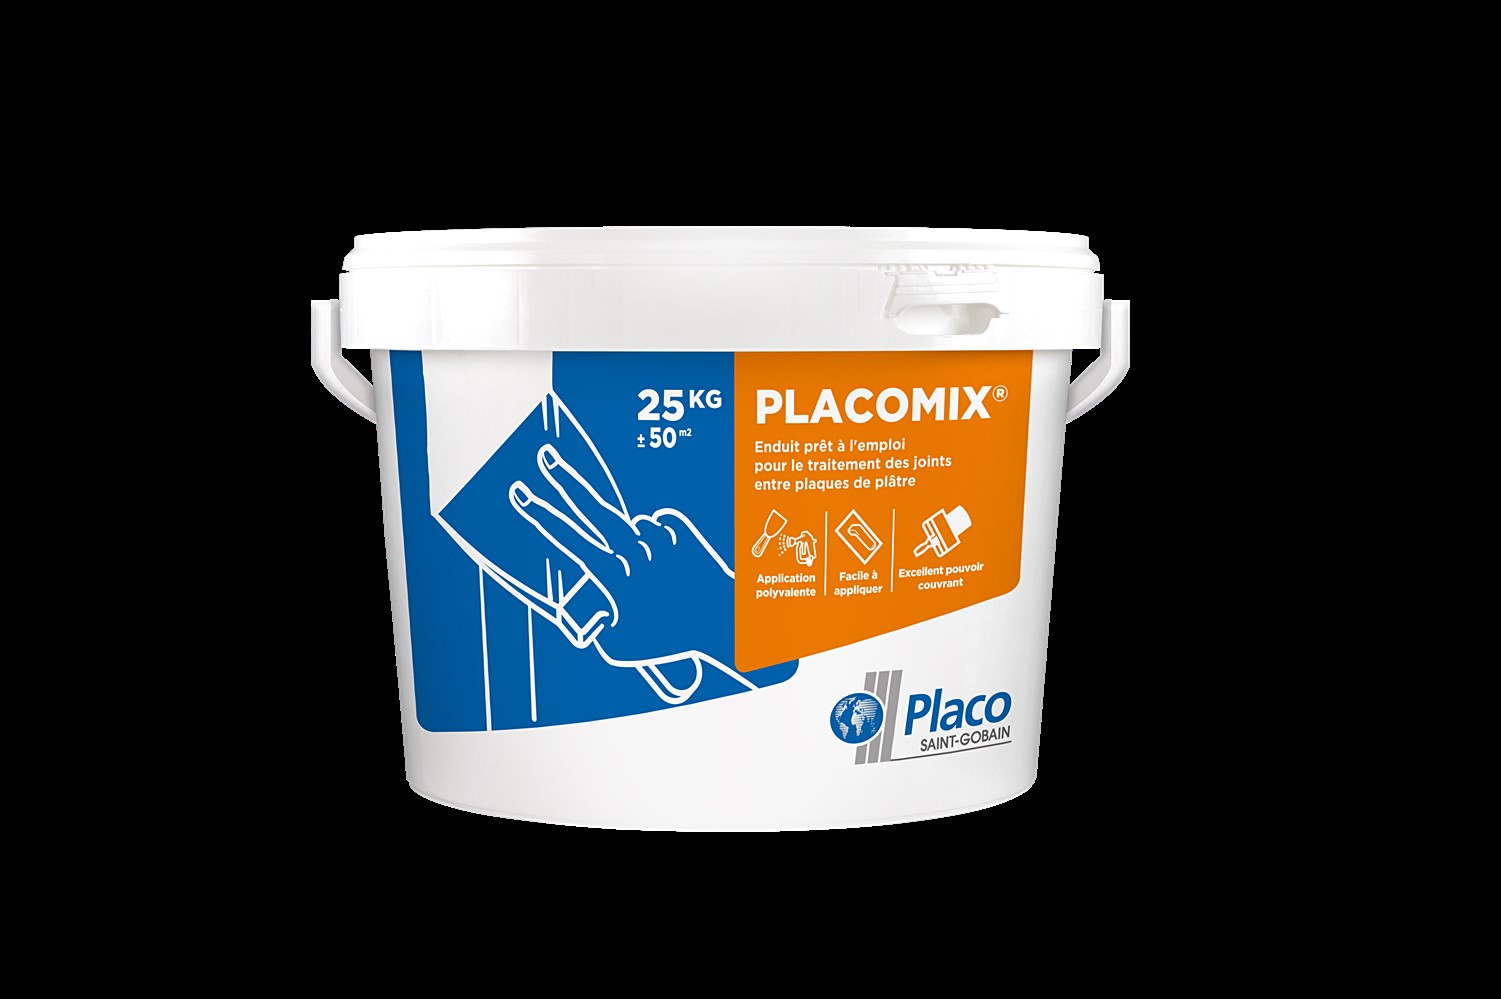 Placomix® Pro, enduit prêt à l'emploi